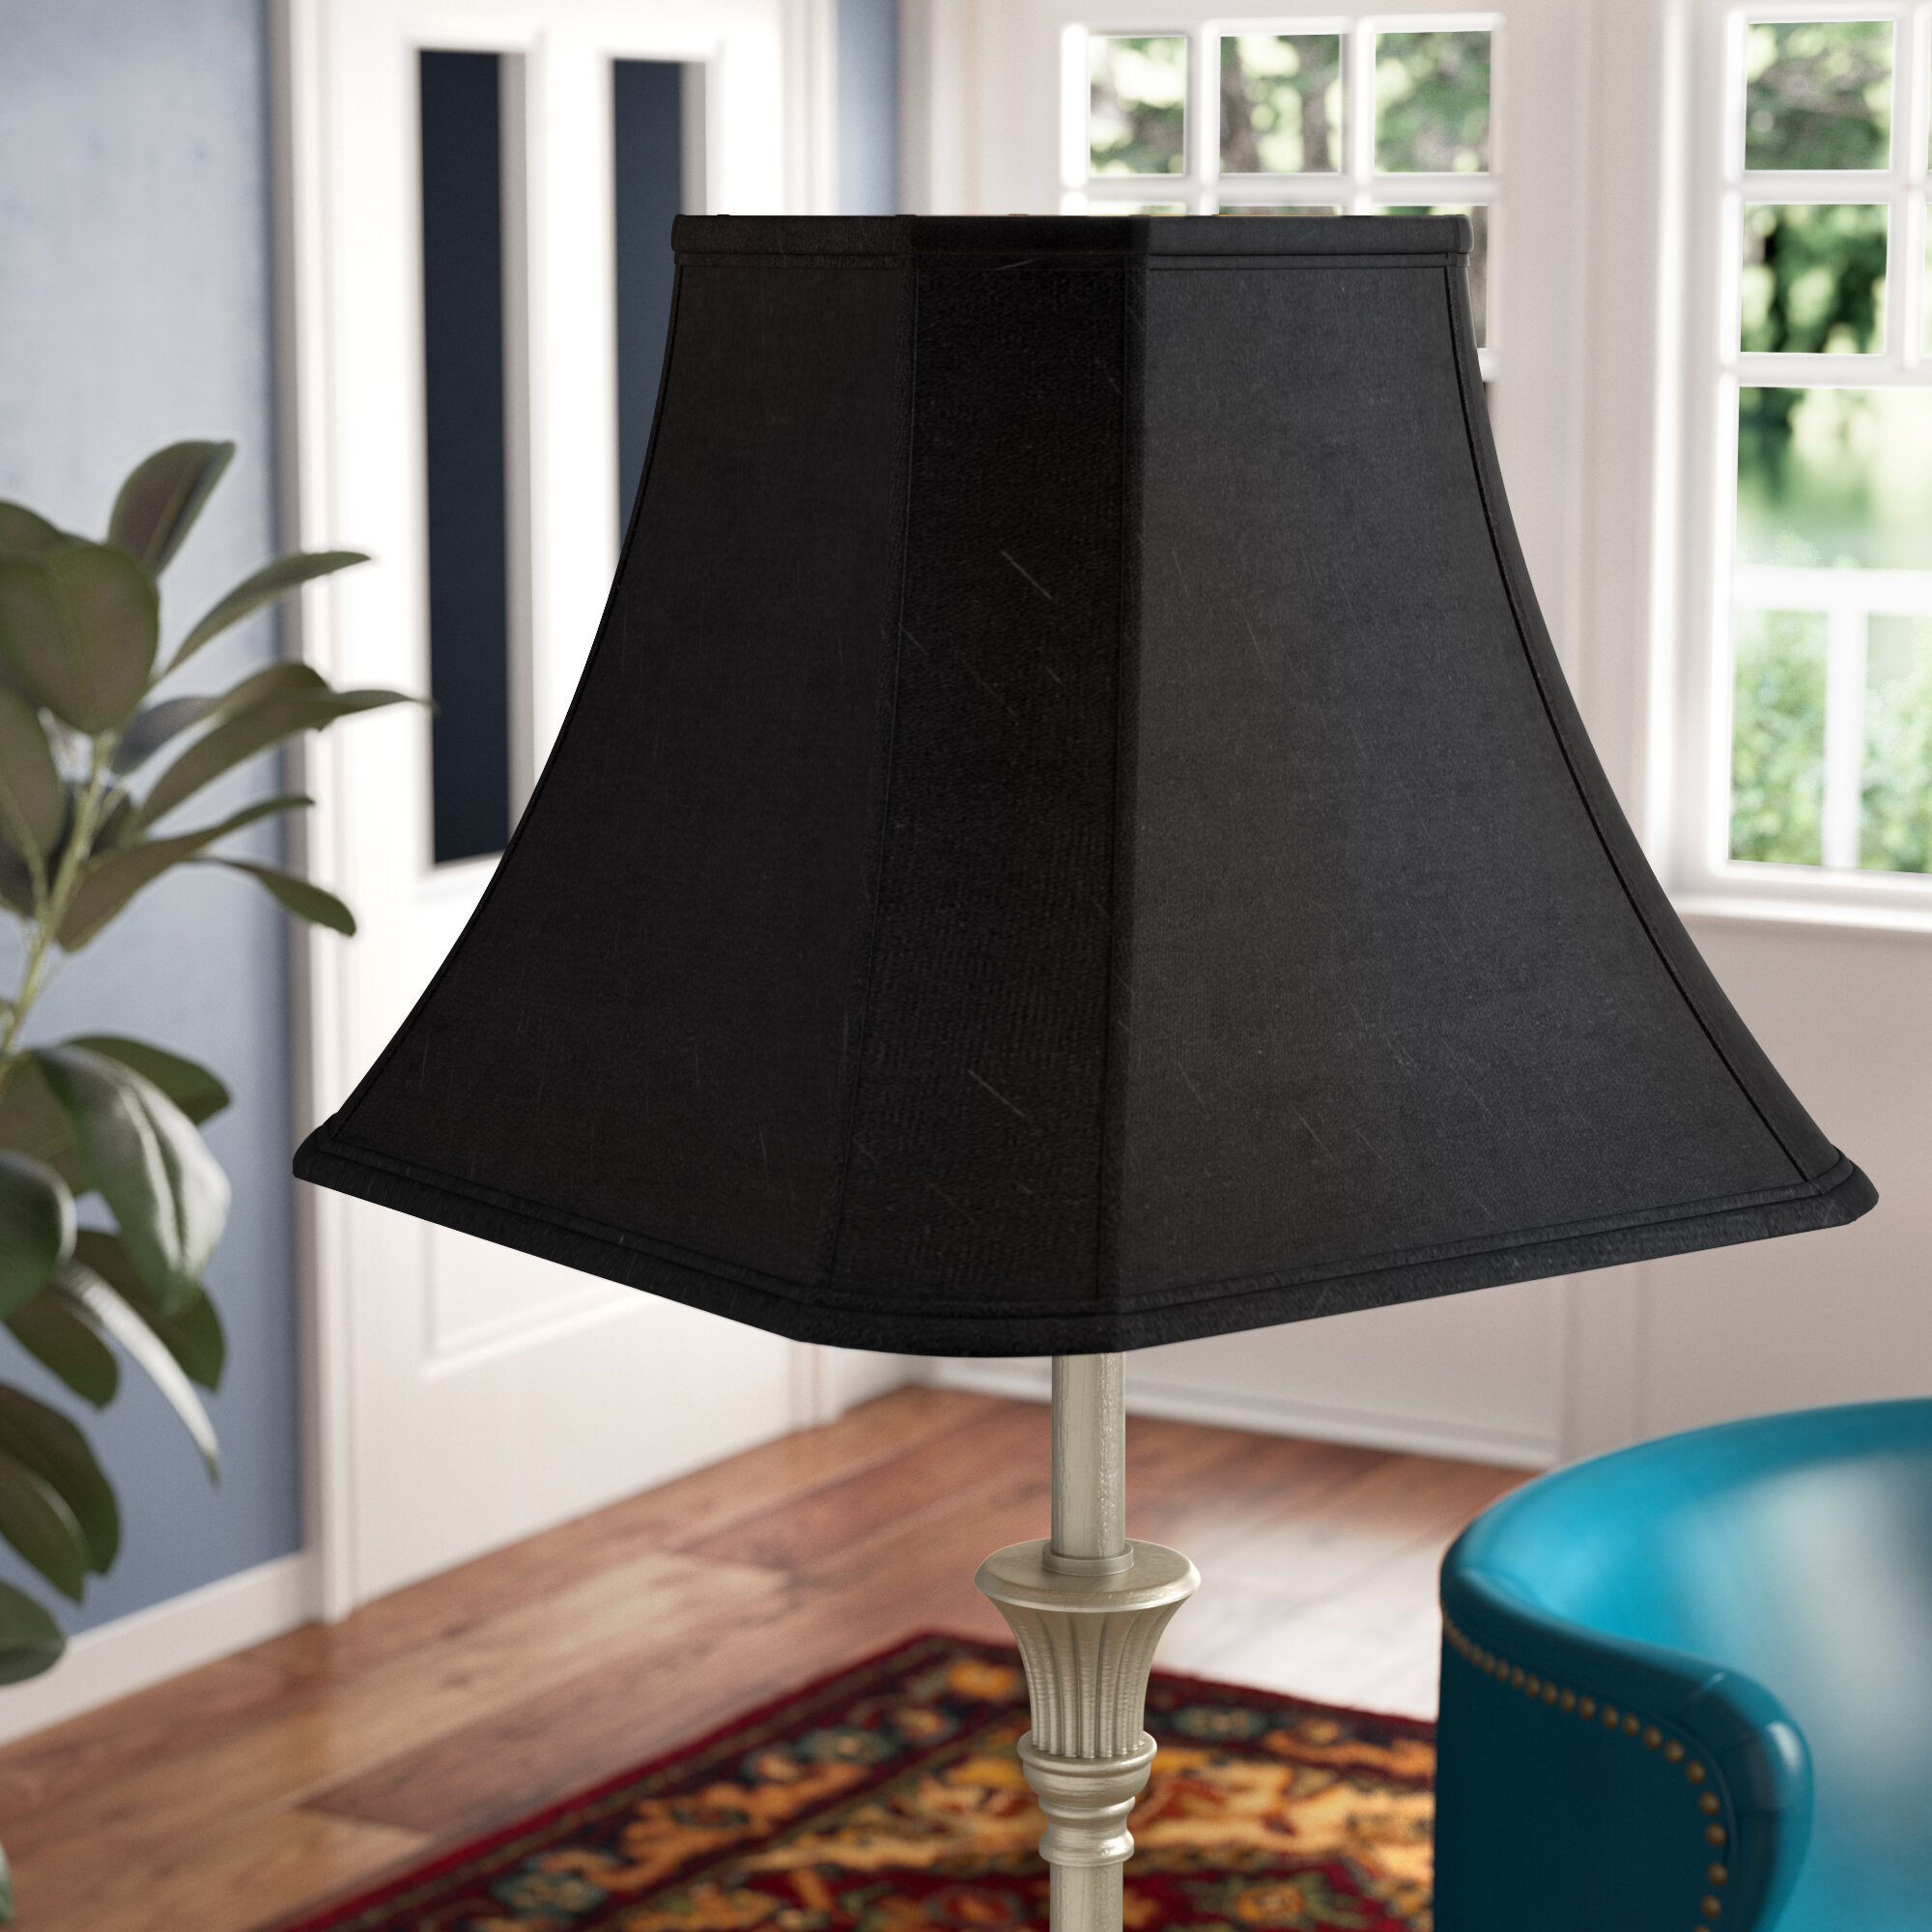 Black Lamp Shade Cloth Table Lamp Shade Universal Reading Lamp Shades Decor 